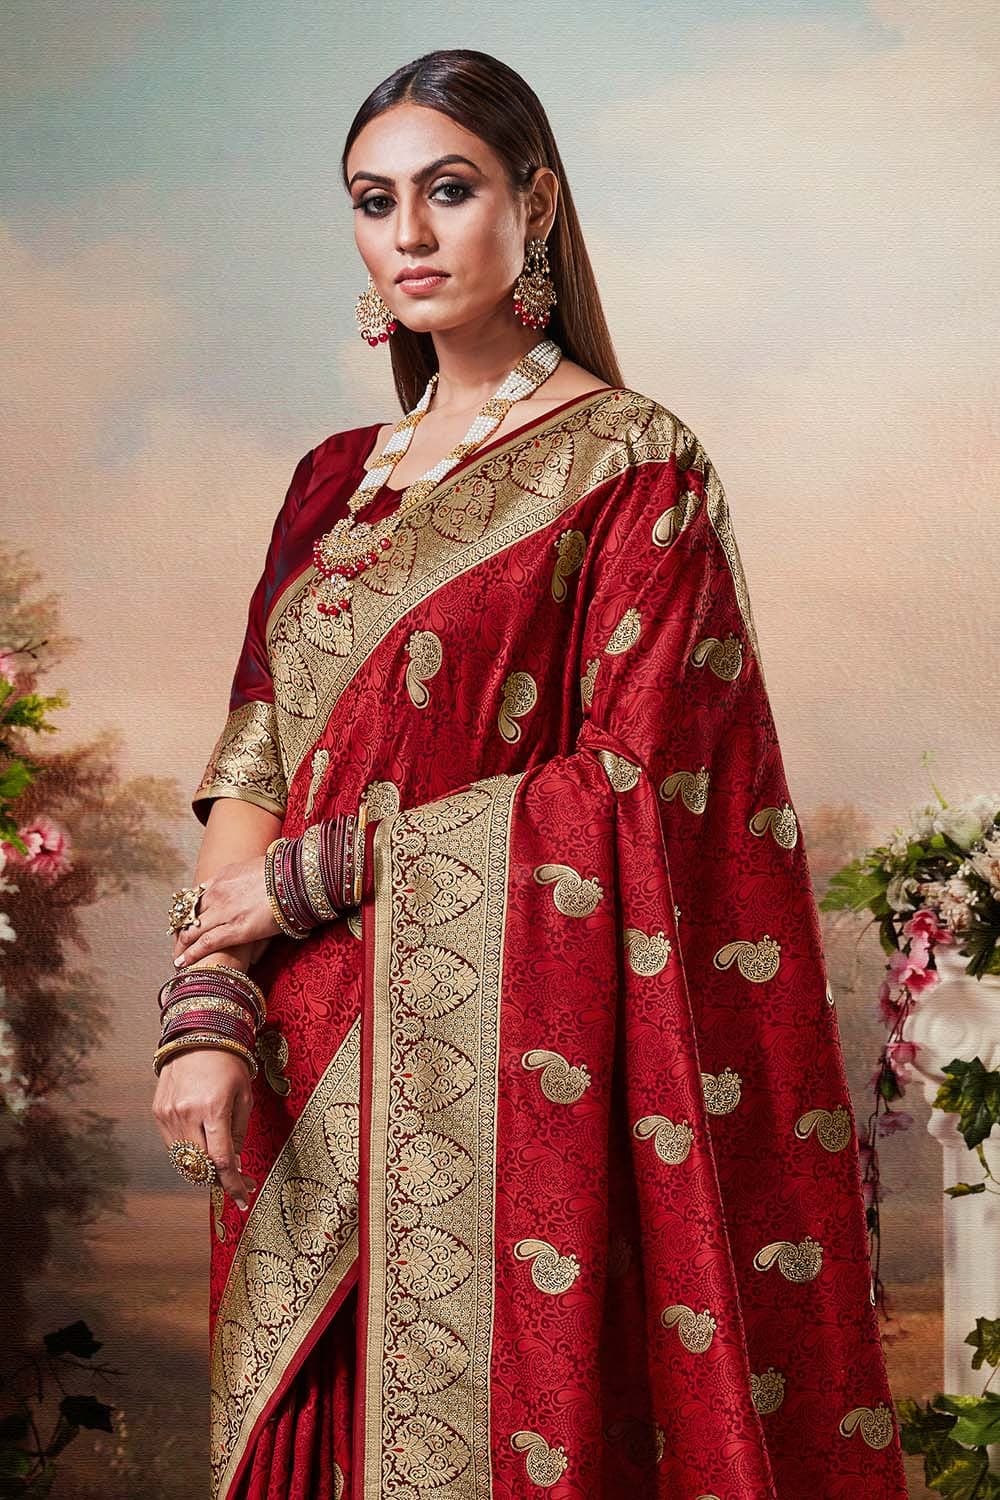 Banarasi Saree Apple Red Printed Banarasi Saree saree online